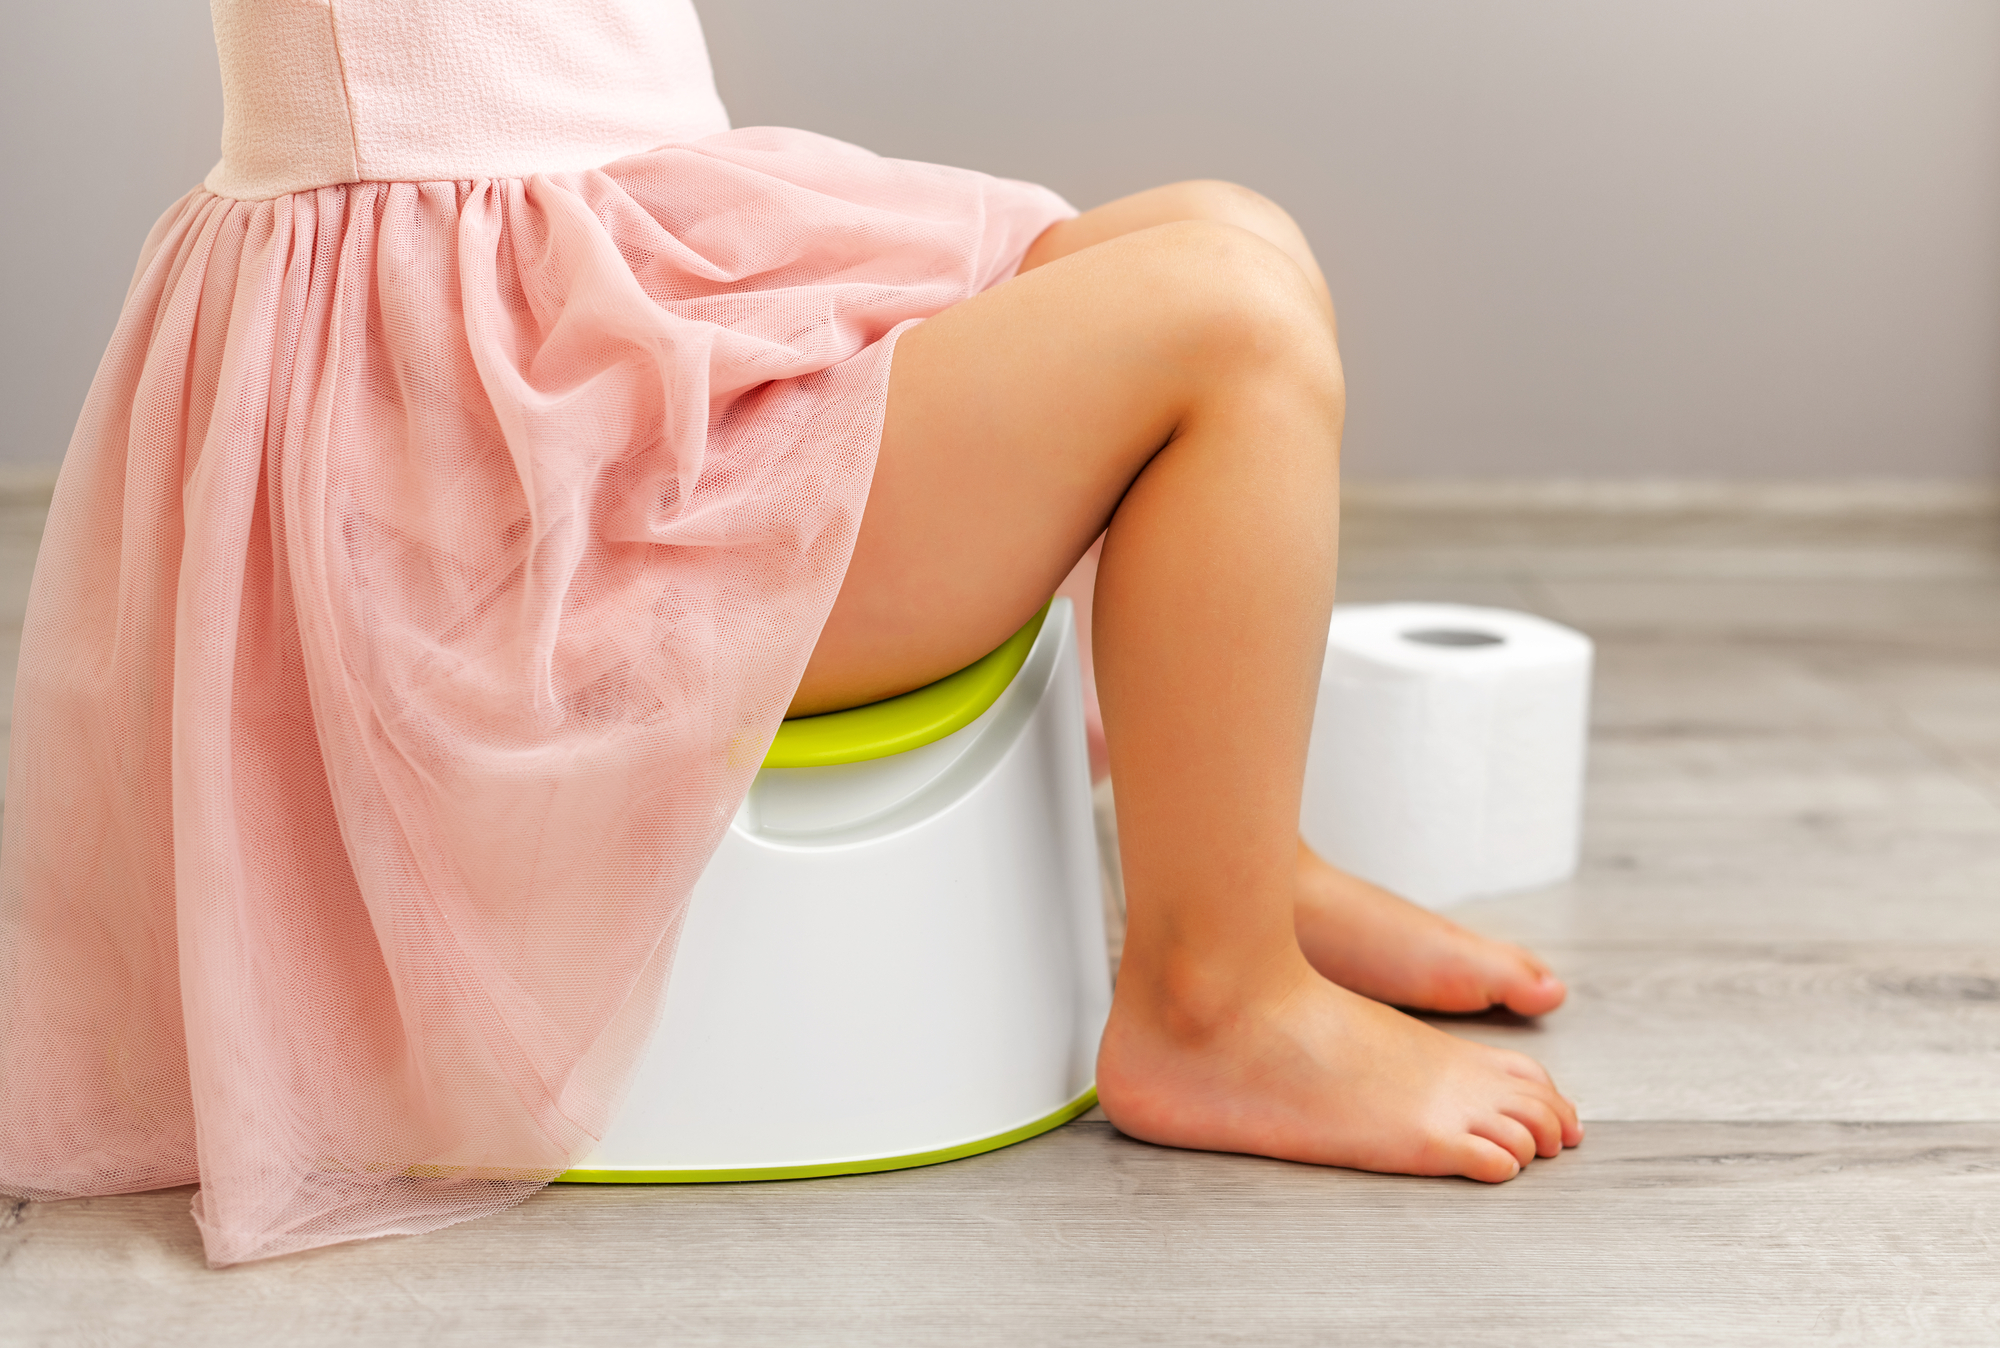 a child sits on a toliet training potty